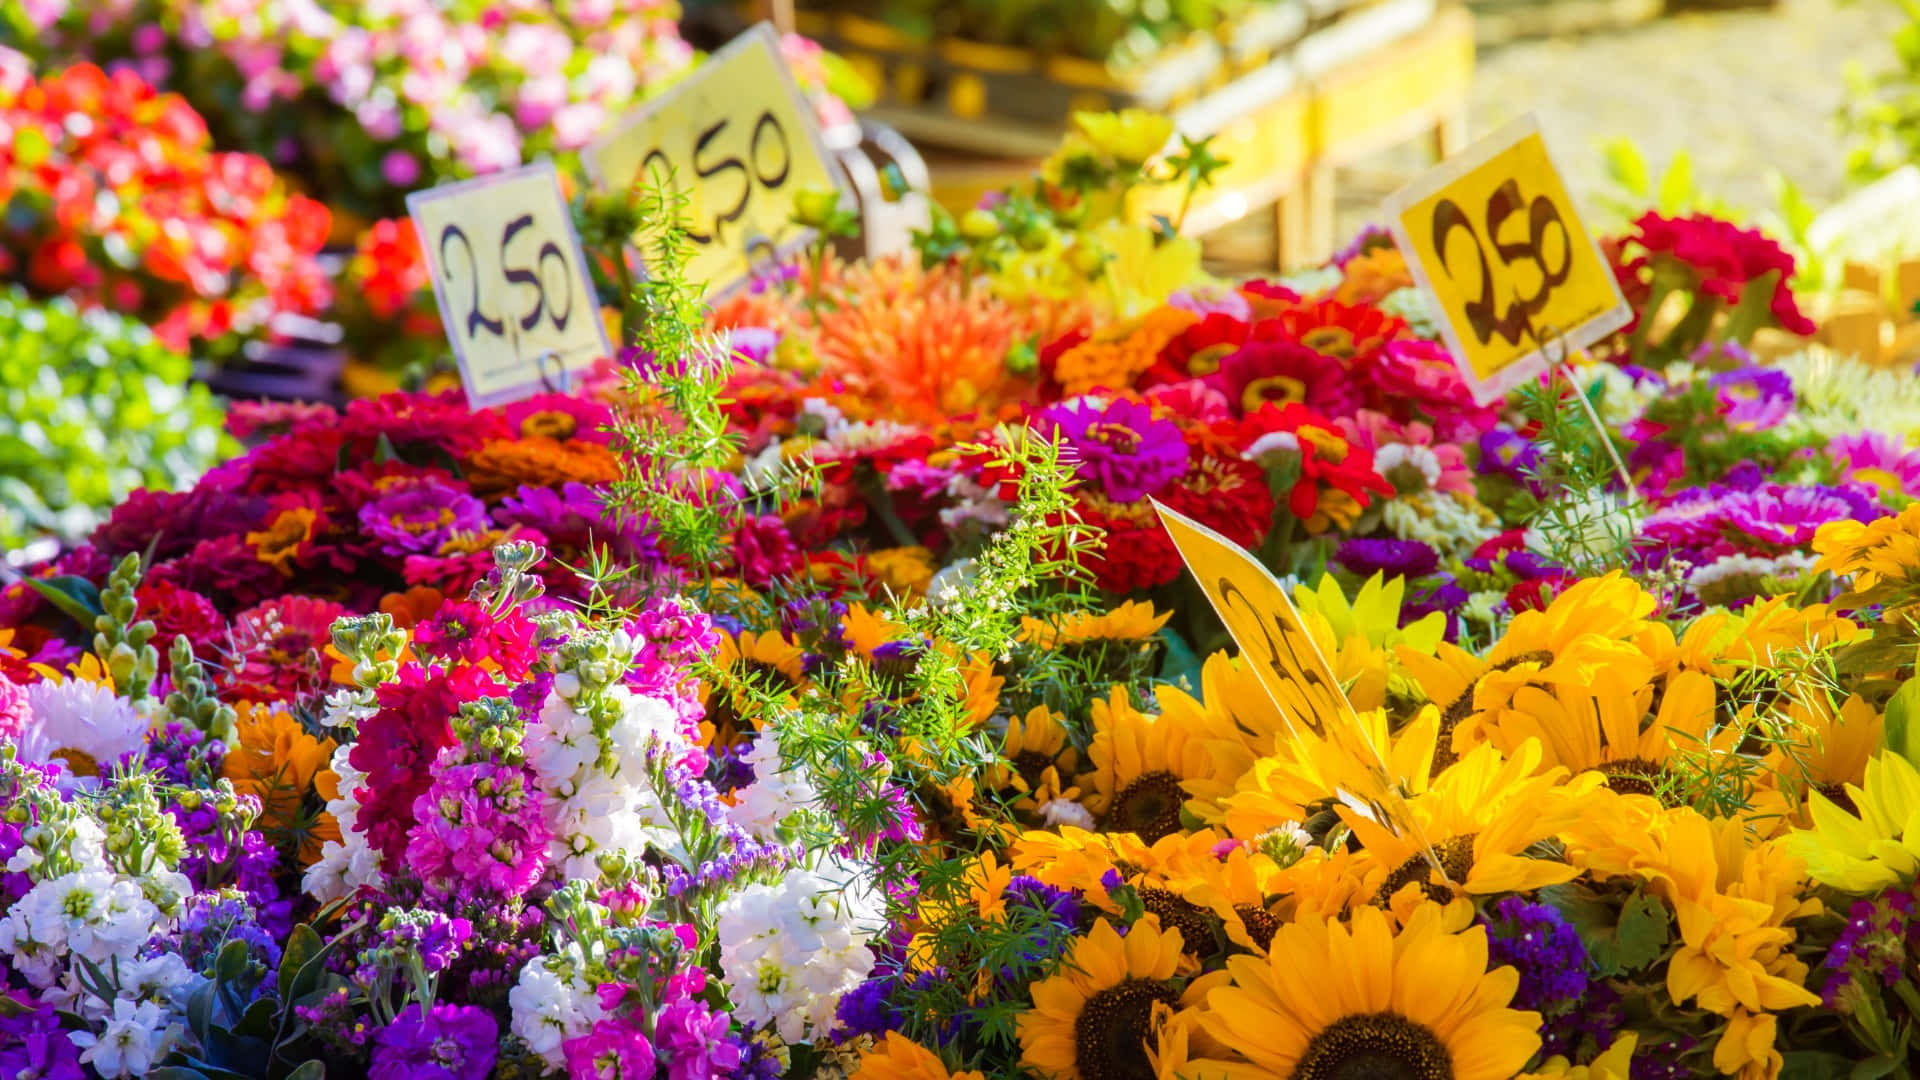 Bustling and Vibrant Flower Market Scene Wallpaper